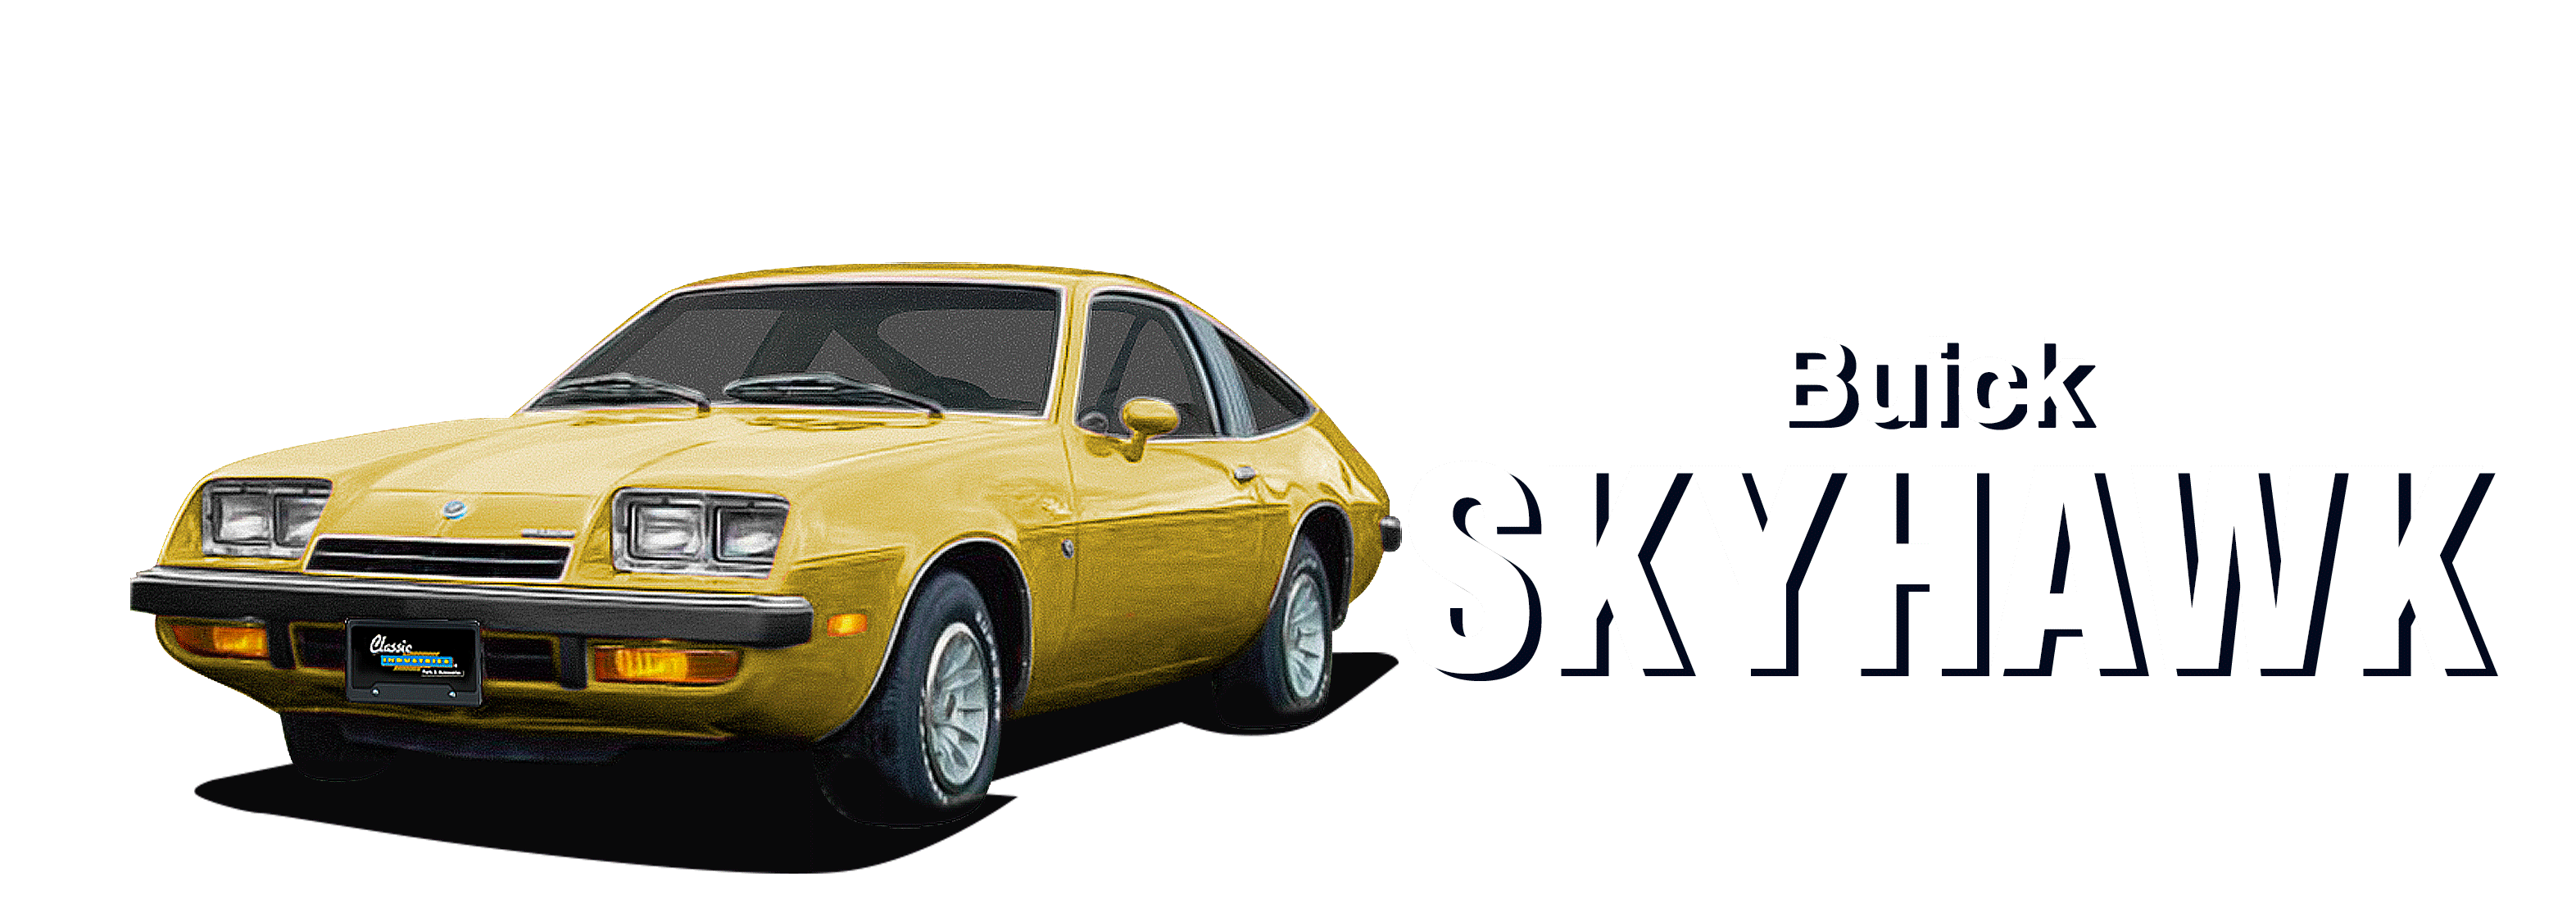 Buick-Skyhawk-vehicle-desktop-2023